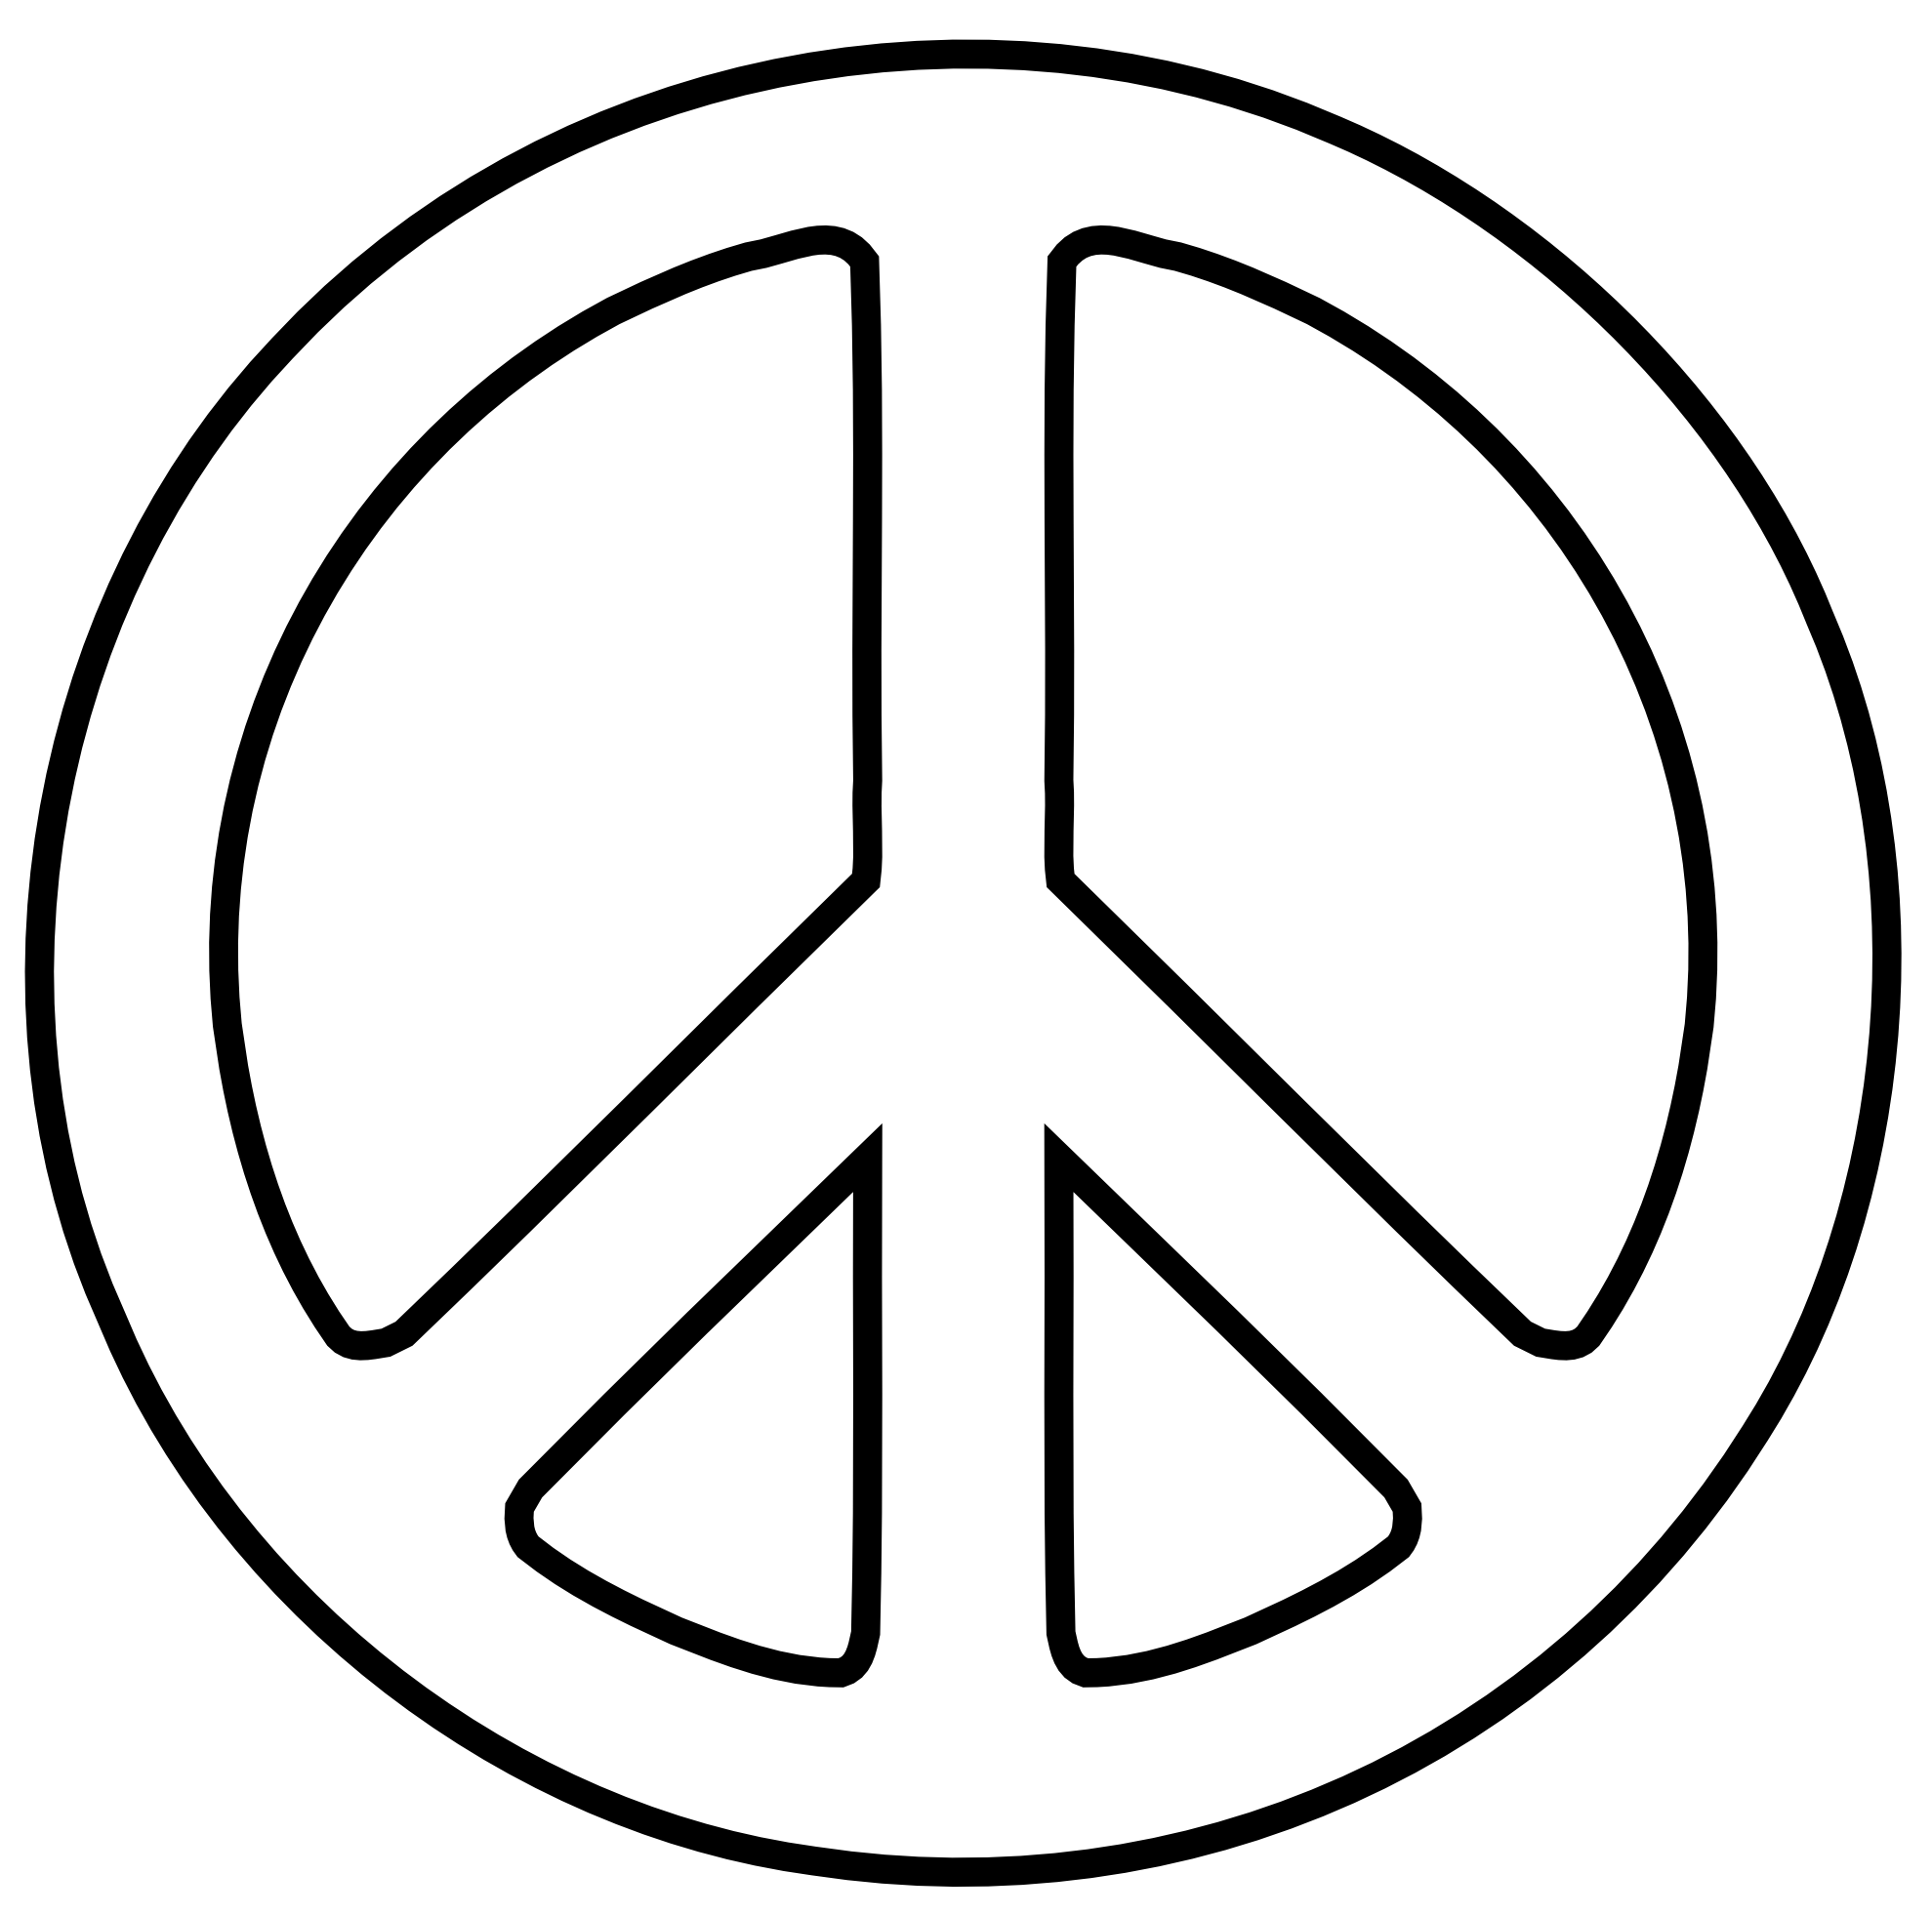 Halo clipart peaceful. Logo peace image